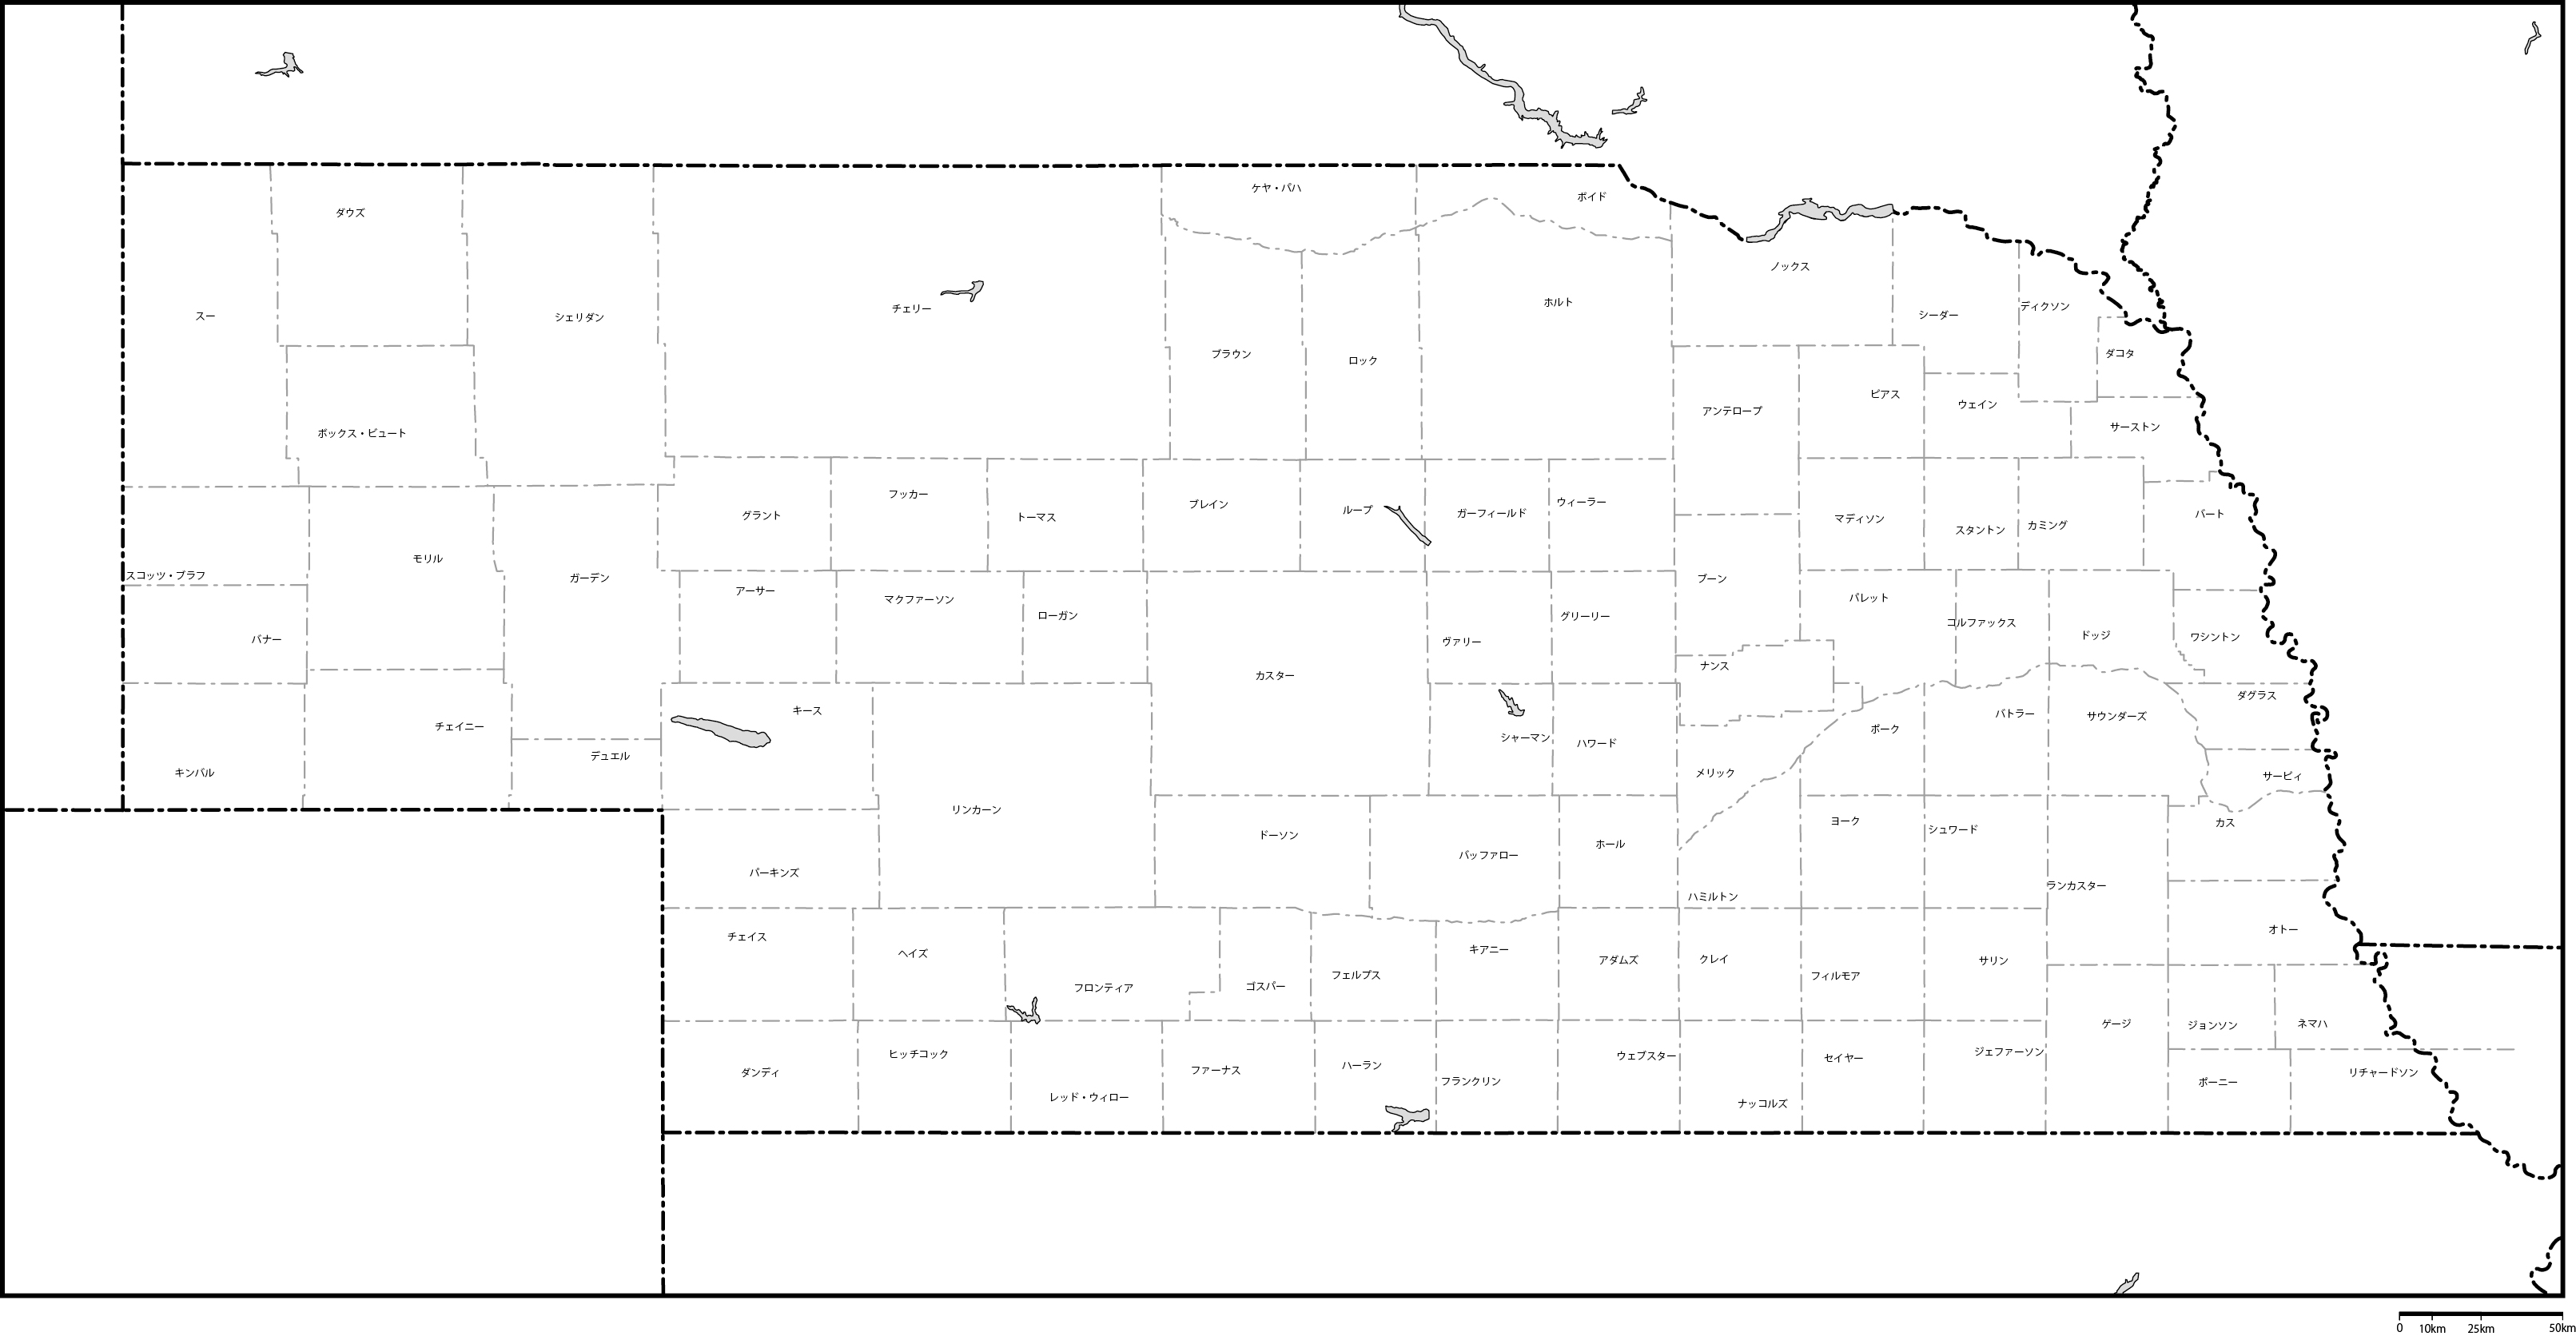 ネブラスカ州郡分け地図郡名あり(日本語)フリーデータの画像